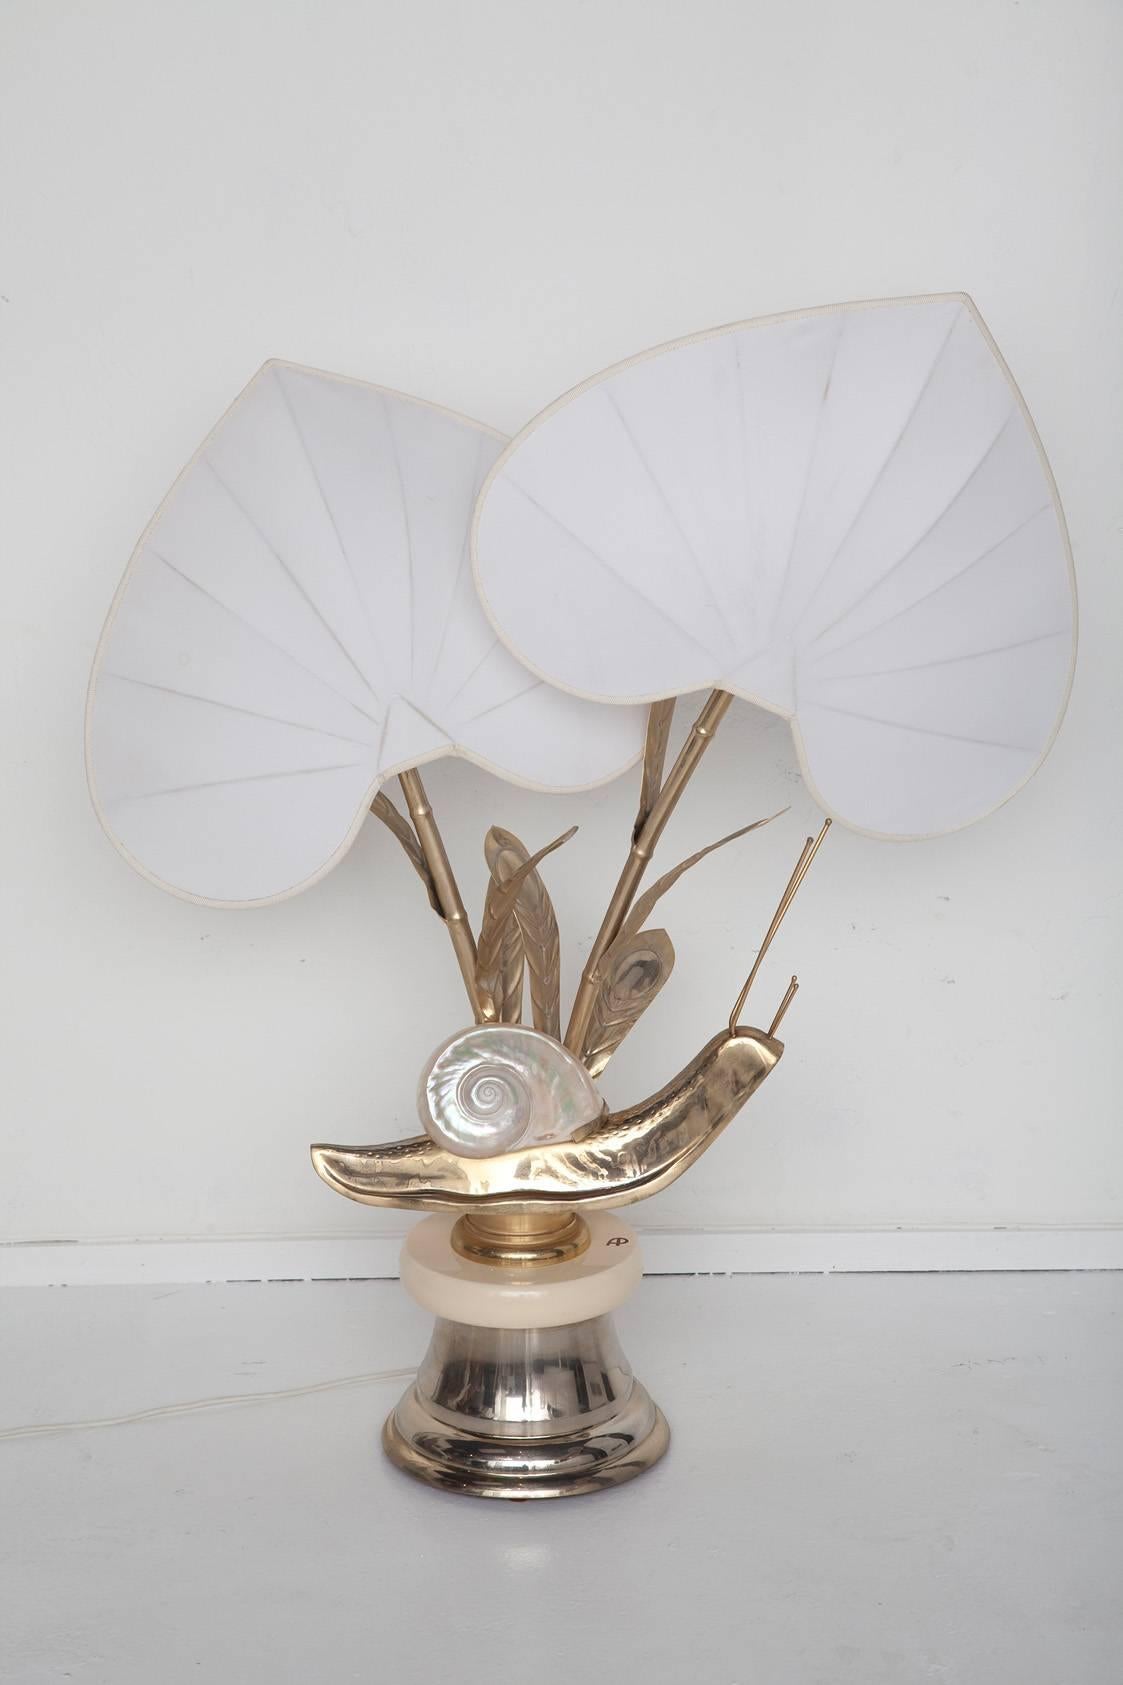 Skurrile, überdimensionierte italienische Messing-Schnecken-Tischlampe von Antonio Pavia, um 1975,  hat eine schimmernde Nautilusschale aus Perlmutt und originelle blattförmige Seidenschirme. Signiert AP auf dem cremefarbenen Emailsockel. U.S.